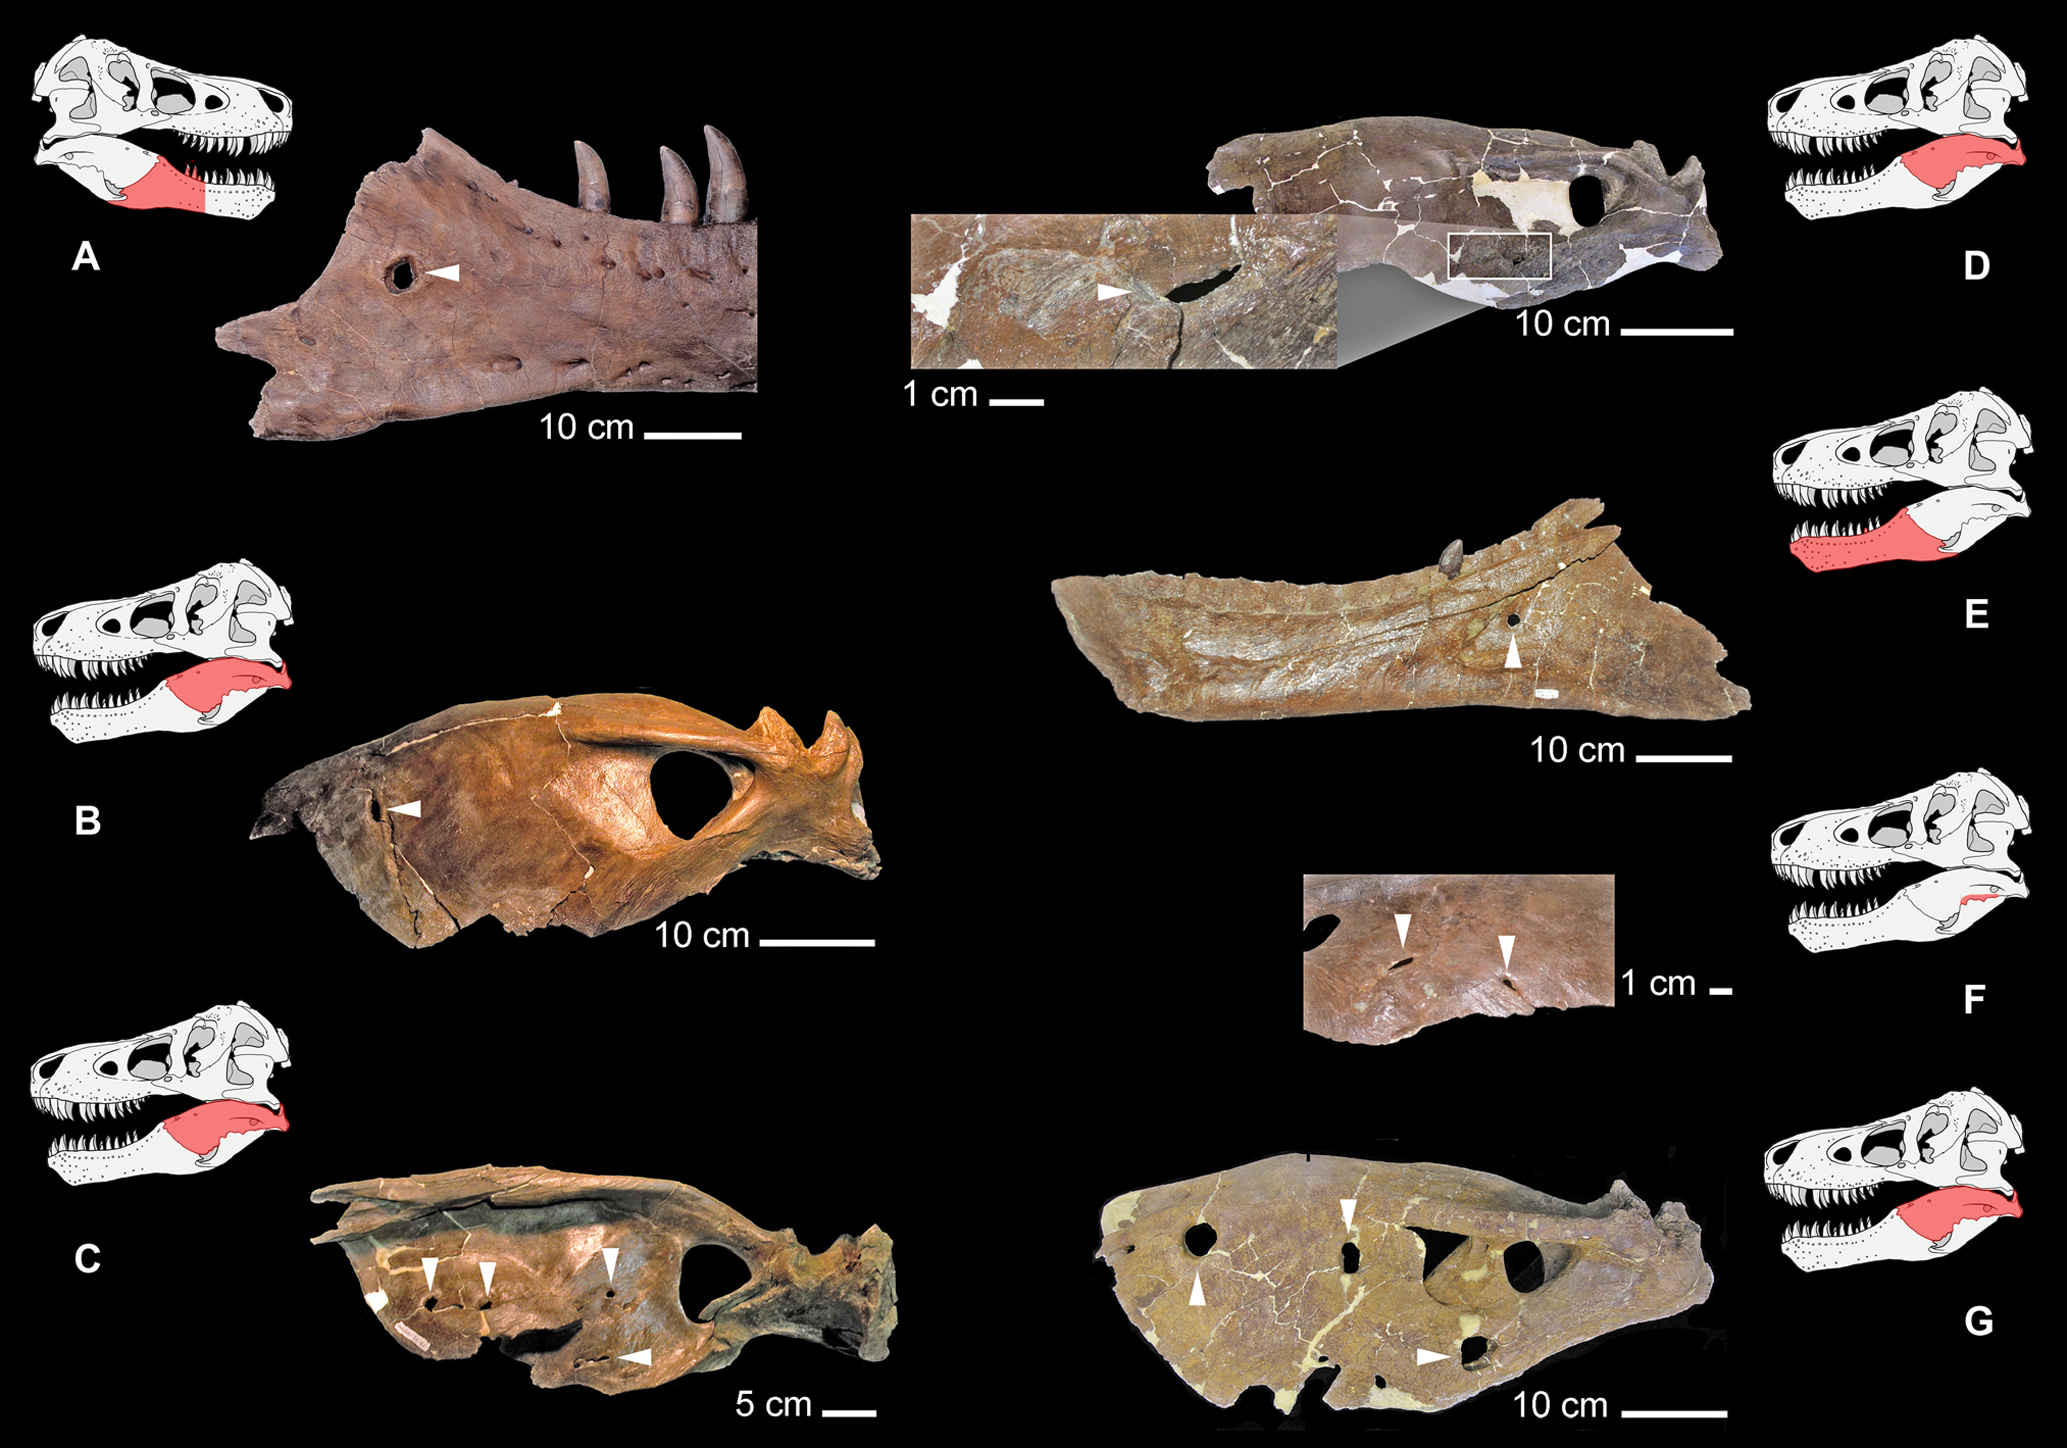 Výrazné kruhovité léze identifikované na čelistech různých tyranosauridů, včetně holotypu druhu T. rex CMNH 9380 (A), jedince MOR 1125 (E) a MOR 980 (G) a dále jedinců druhu Albertosaurus sarcophagus (D) a Daspletosaurus torosus (B, C, F). Agresivní 